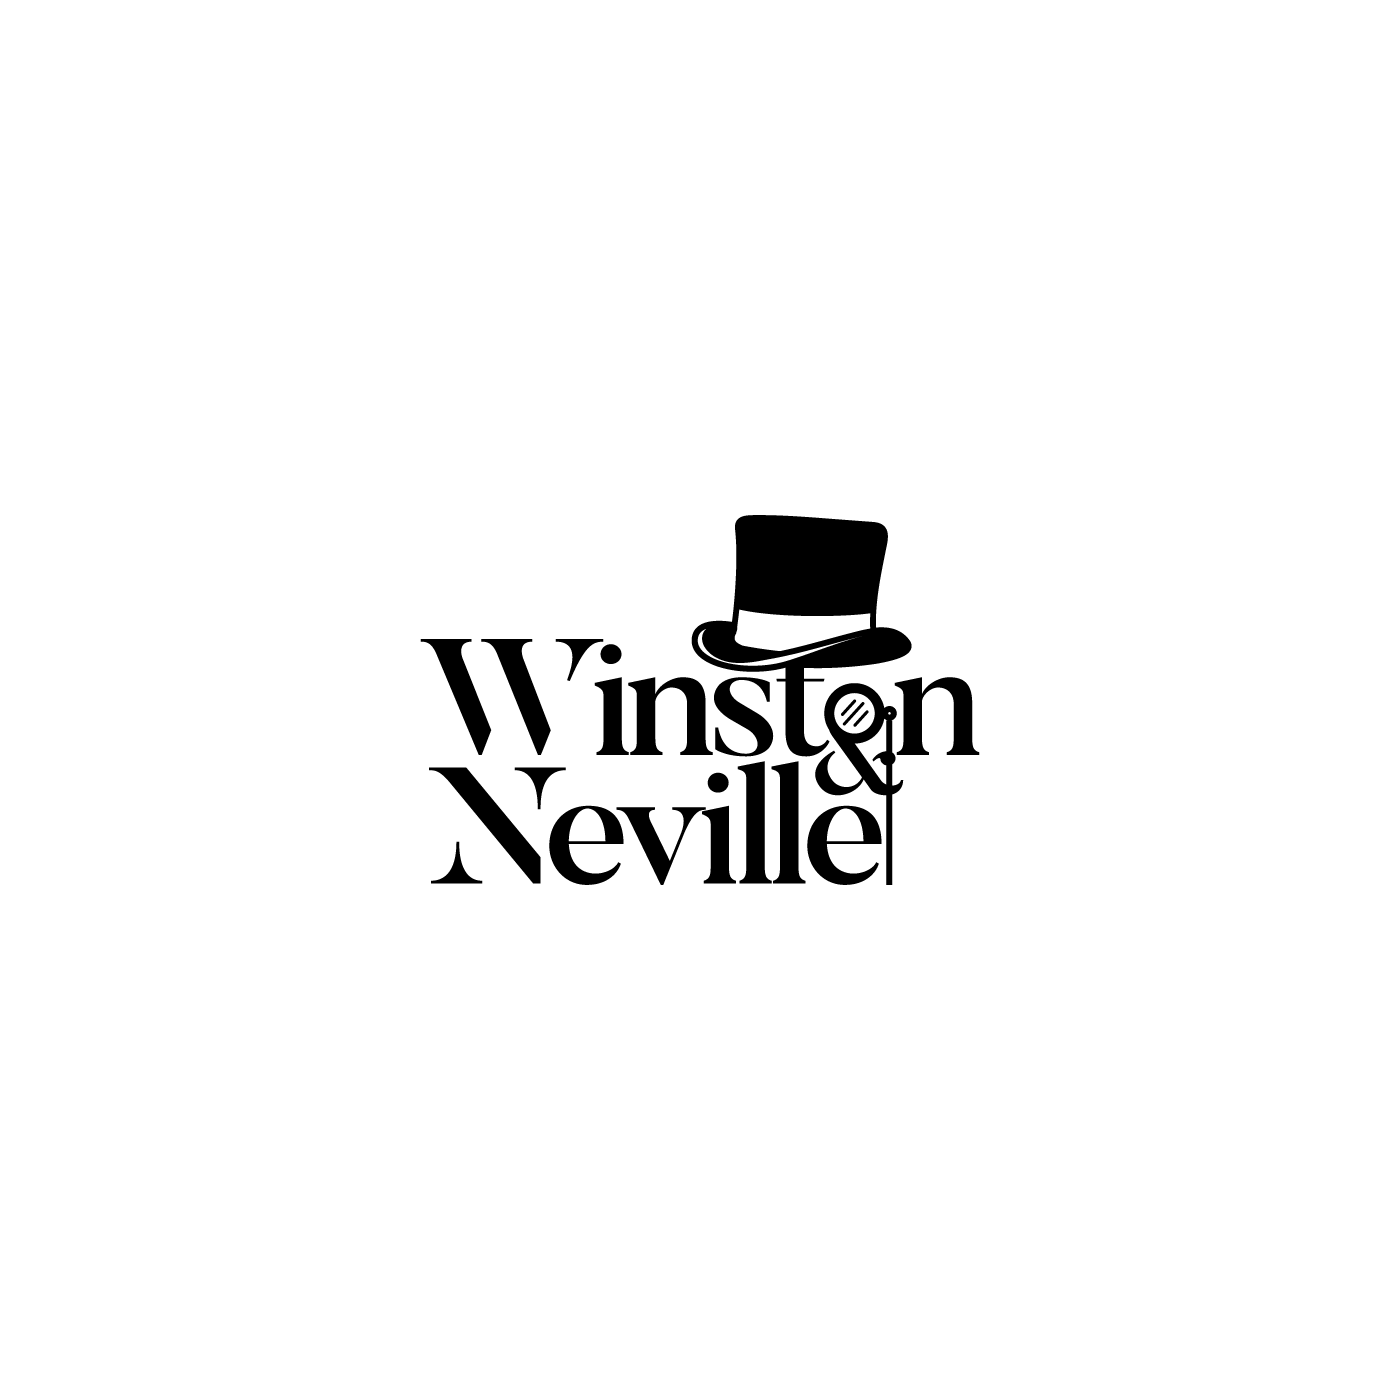 Neville Logo - Upmarket, Playful Logo Design for Winston & Neville